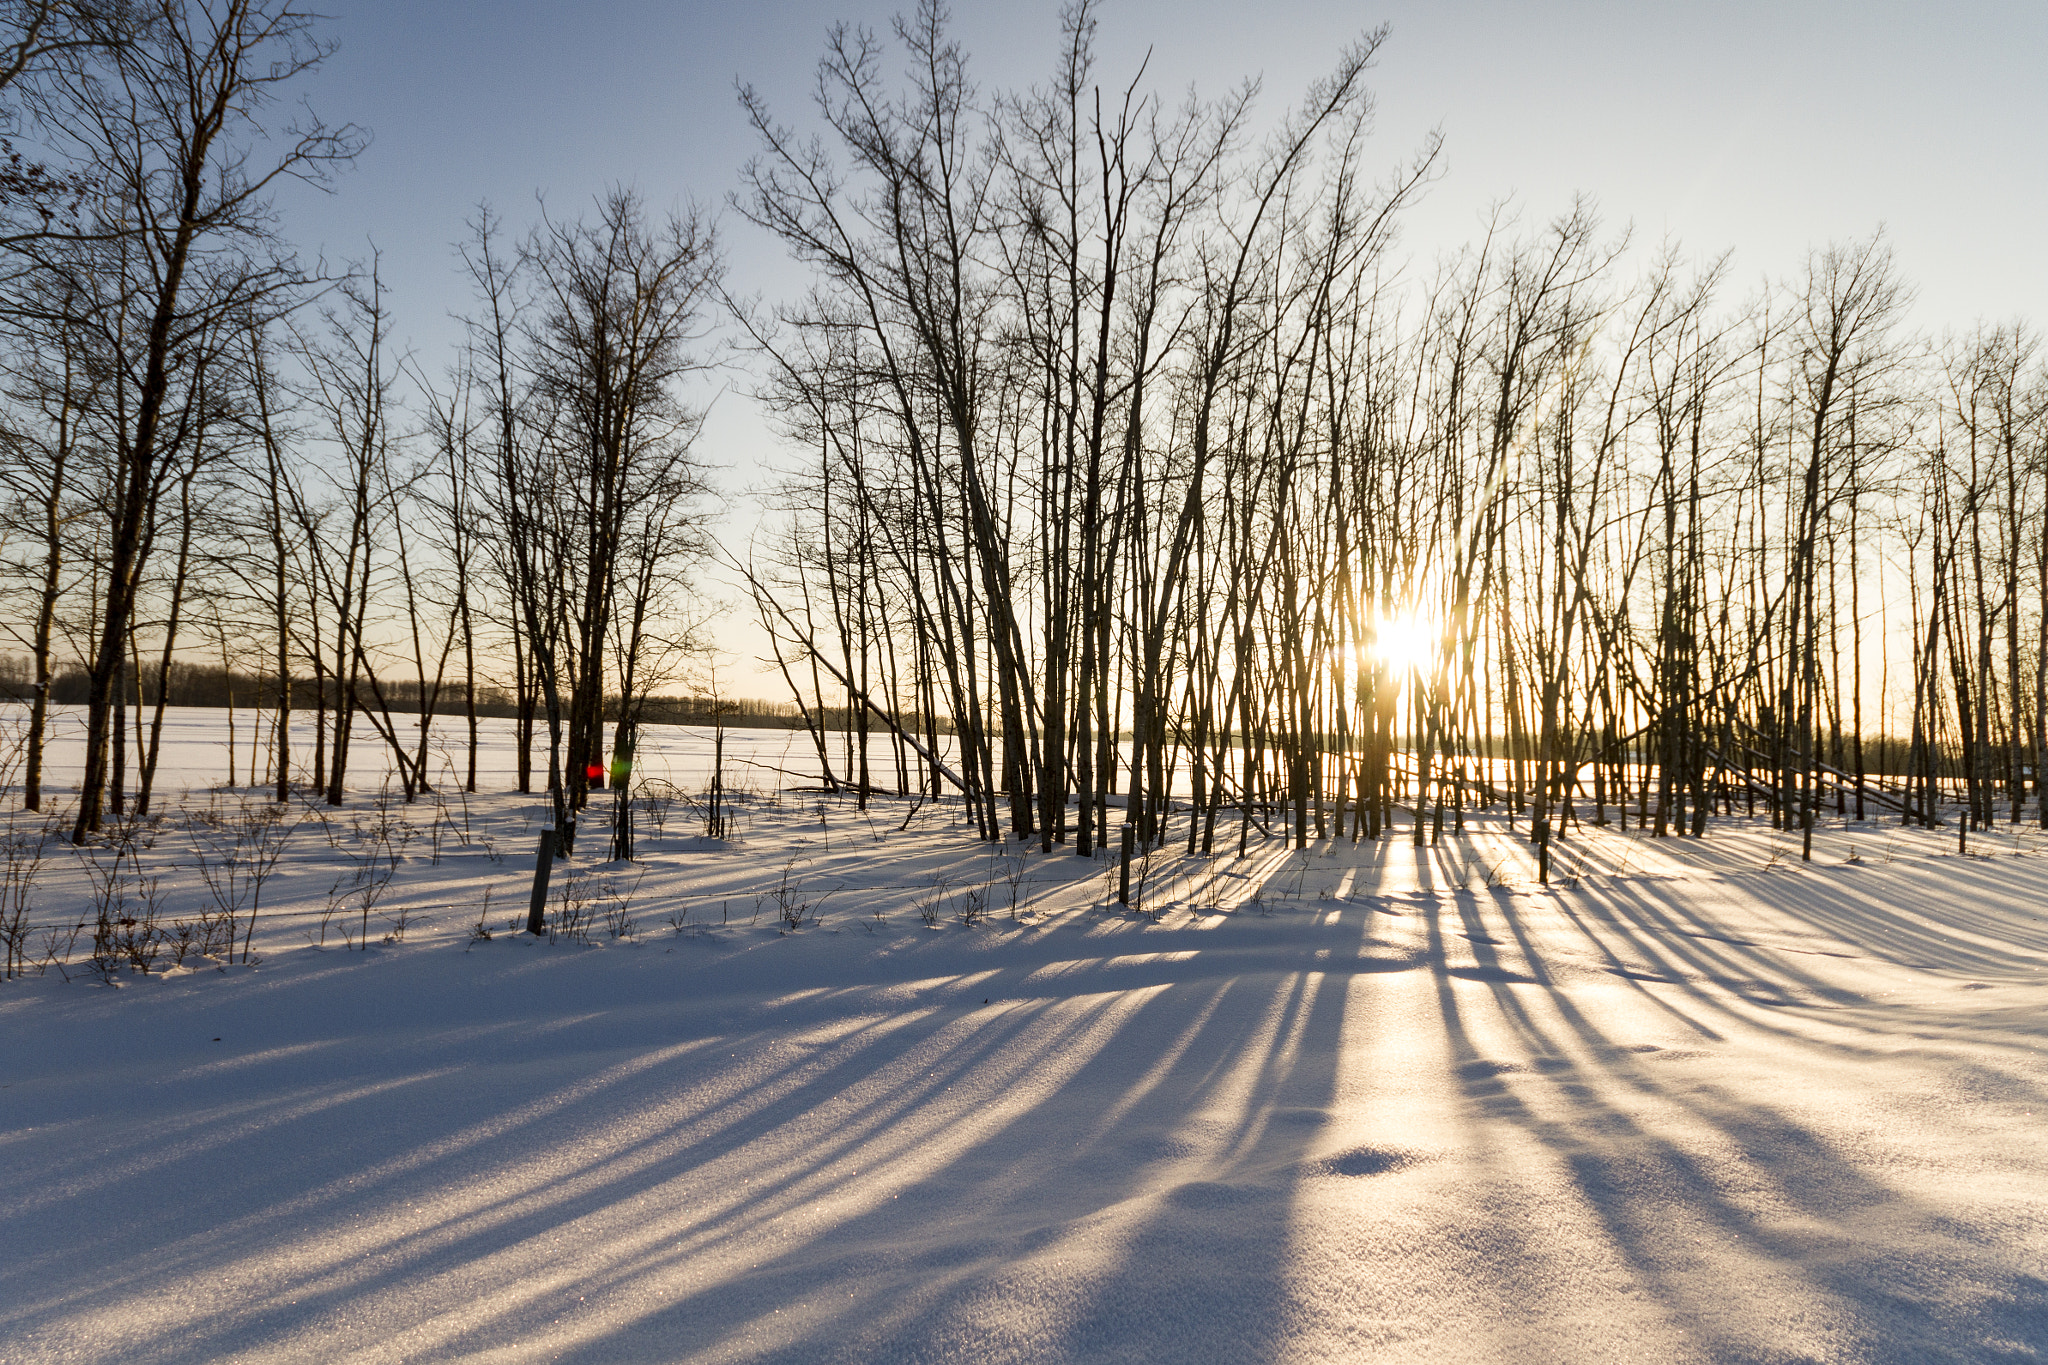 Canon EOS 7D sample photo. Long shadows in winter photography